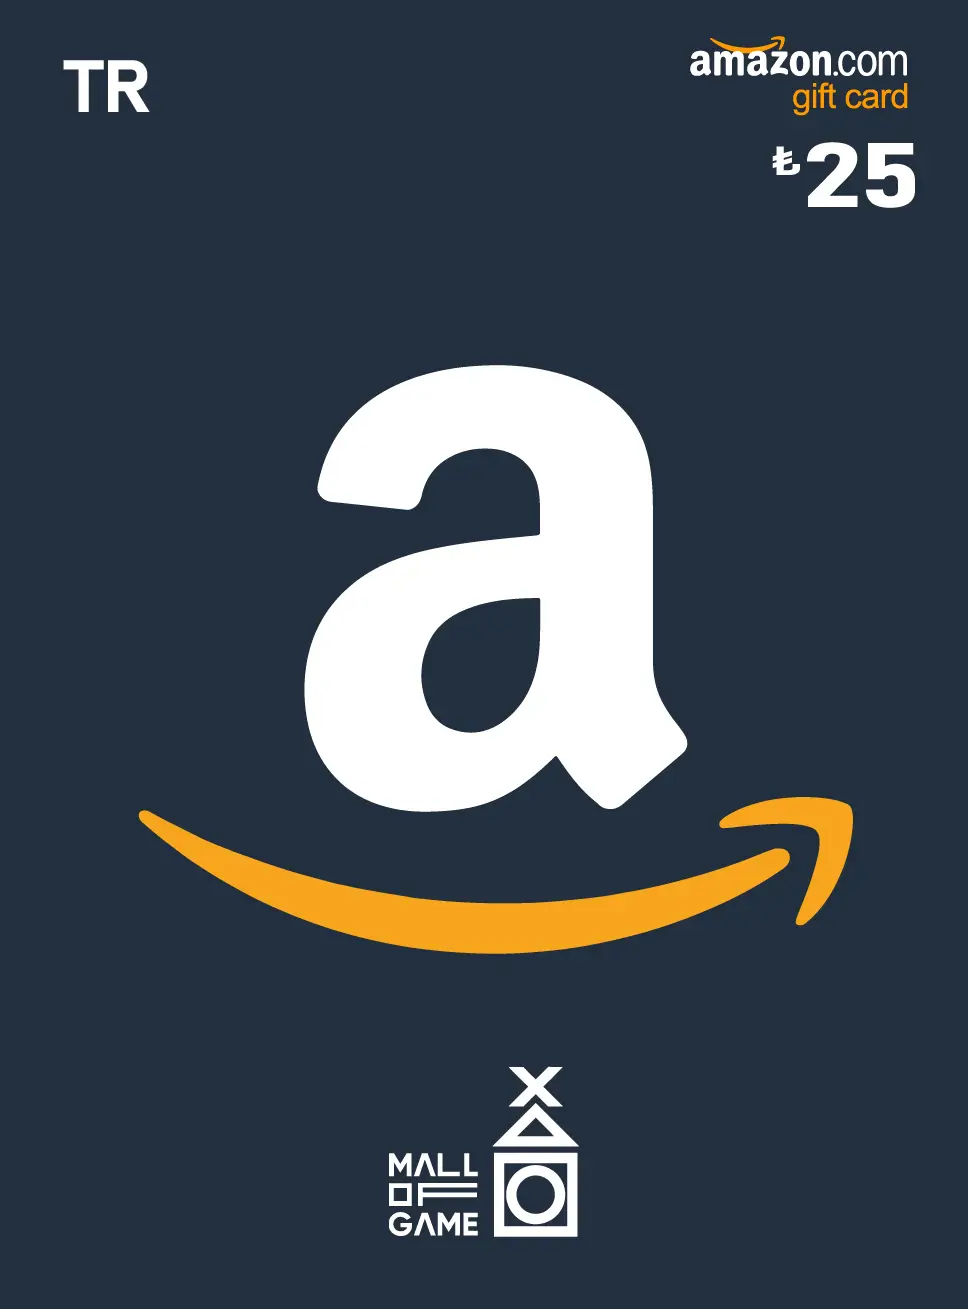 Amazon 25 TRY